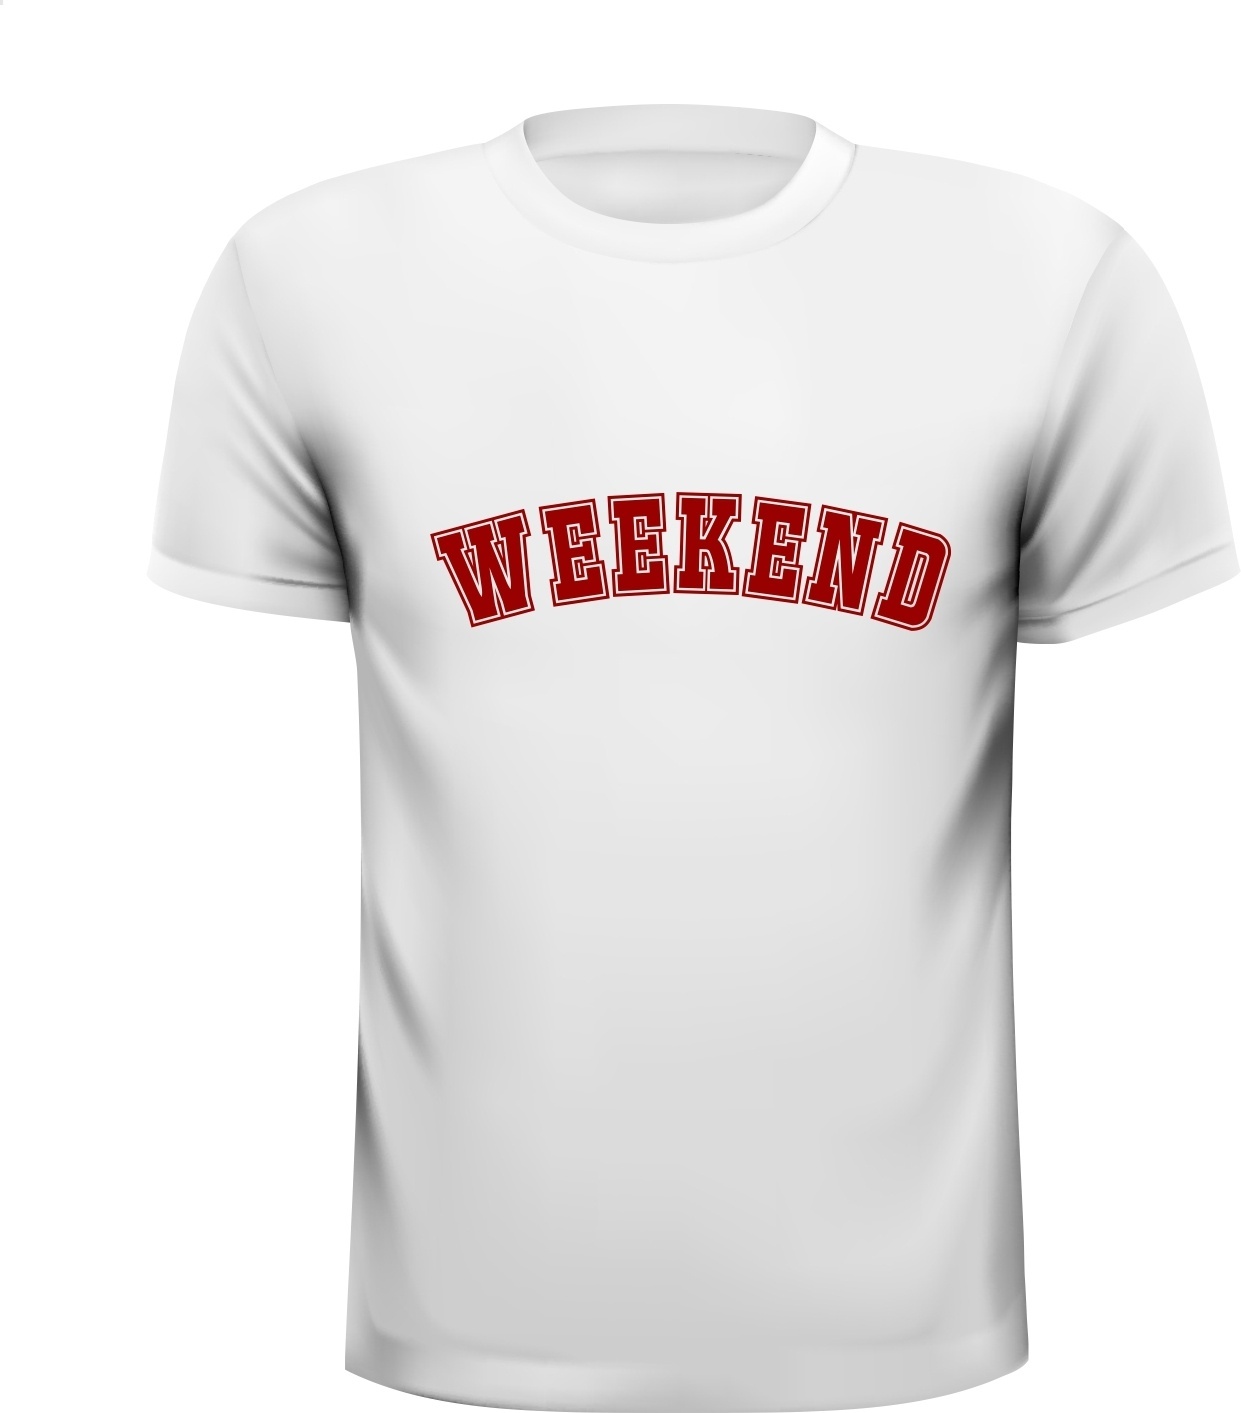 draadloos Per ongeluk Fabrikant Weekend vrij verlof genieten uitgaan T-shirt